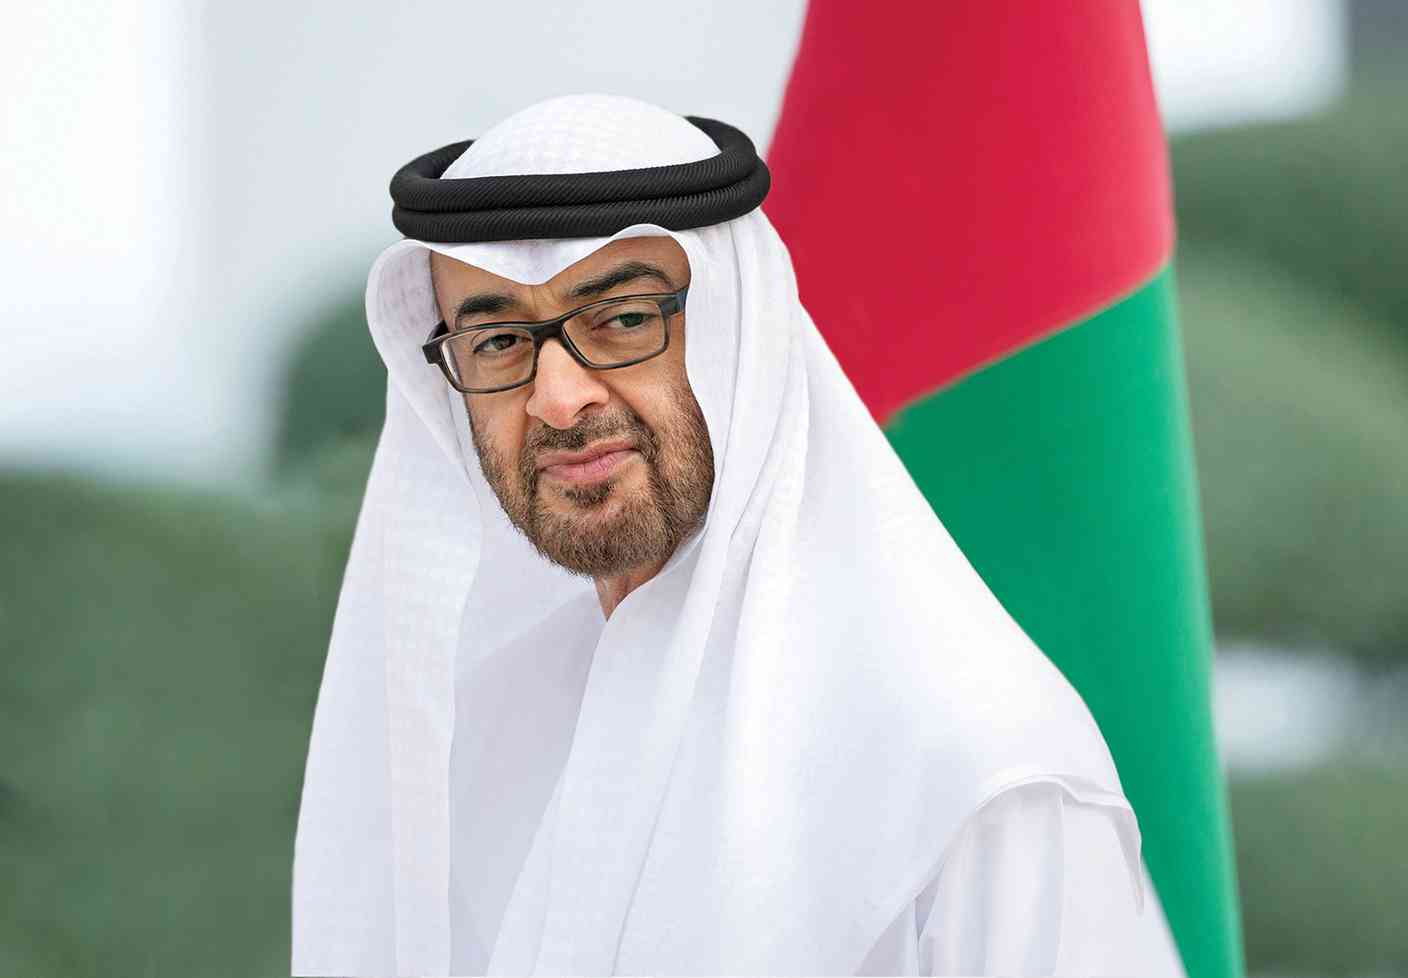 رئيس الإمارات الشيخ محمد بن زايد